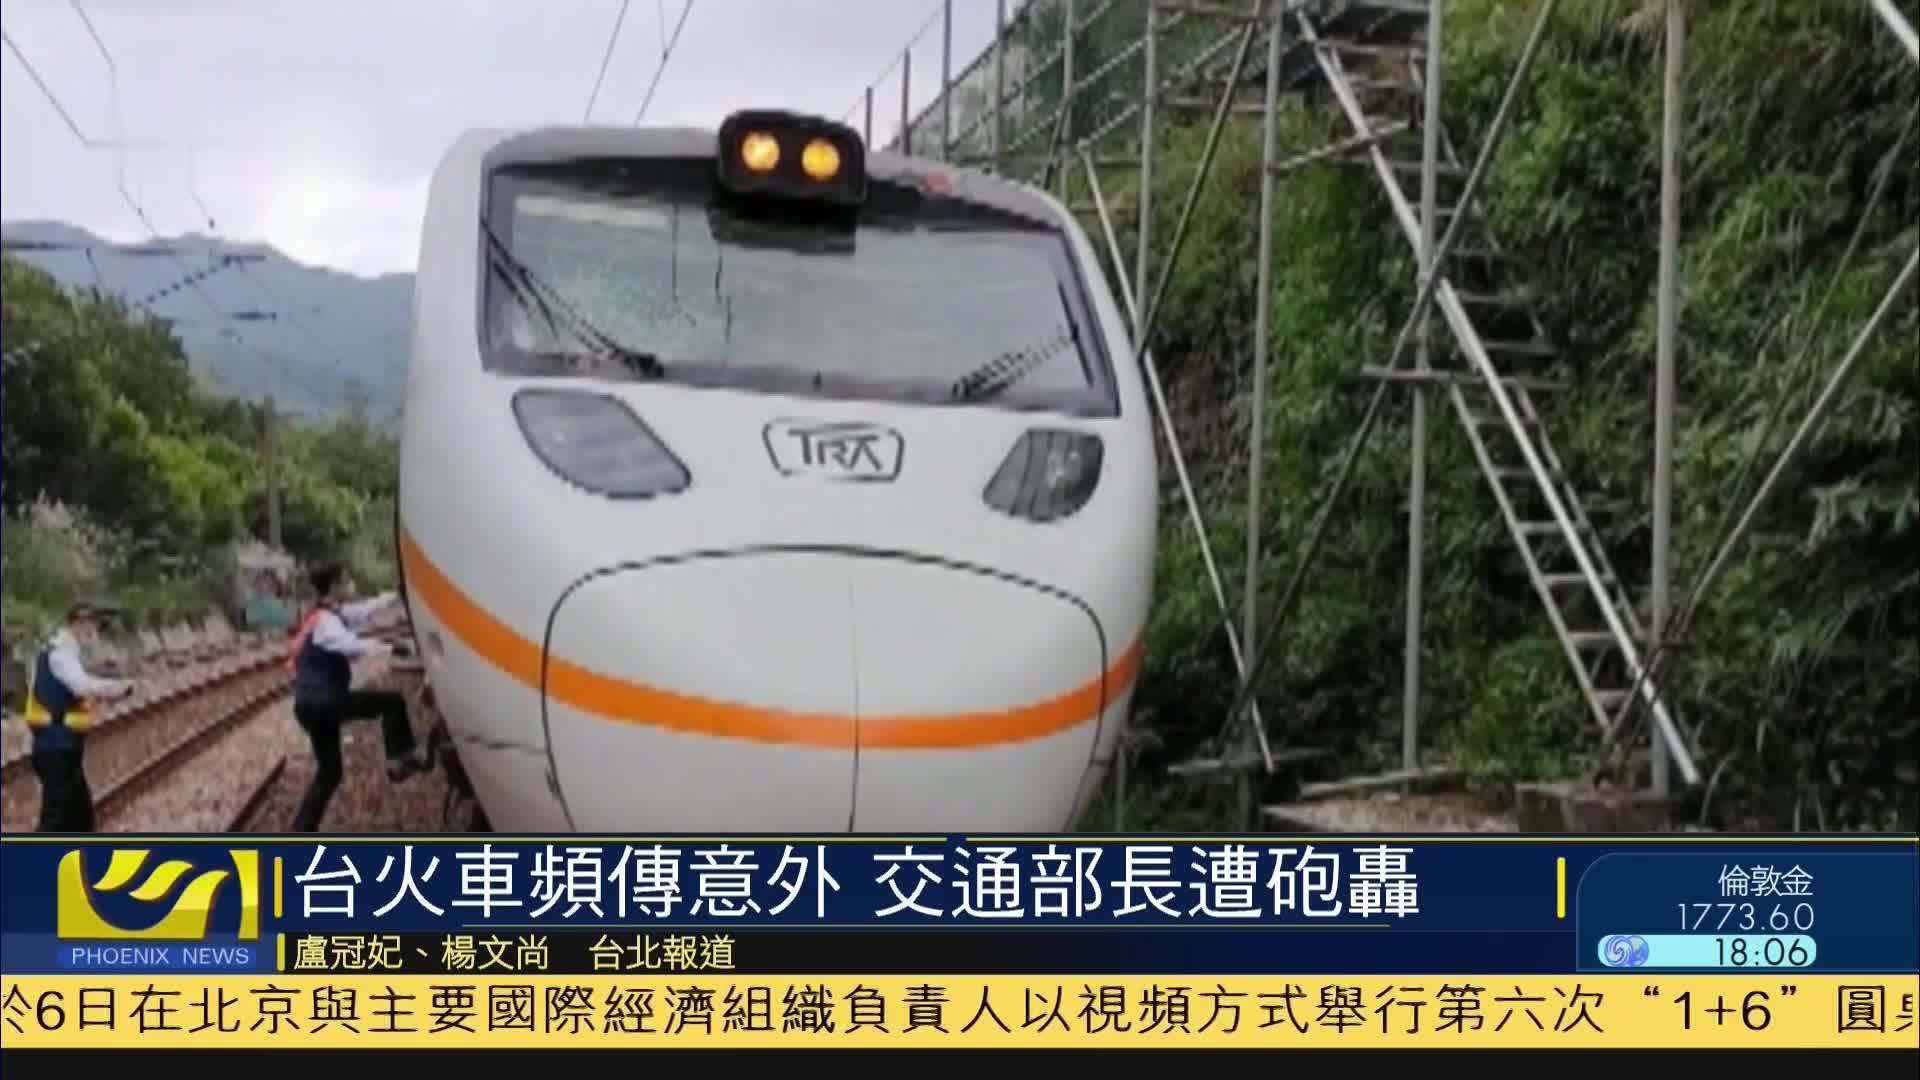 台湾火车频传意外 交通部长遭炮轰